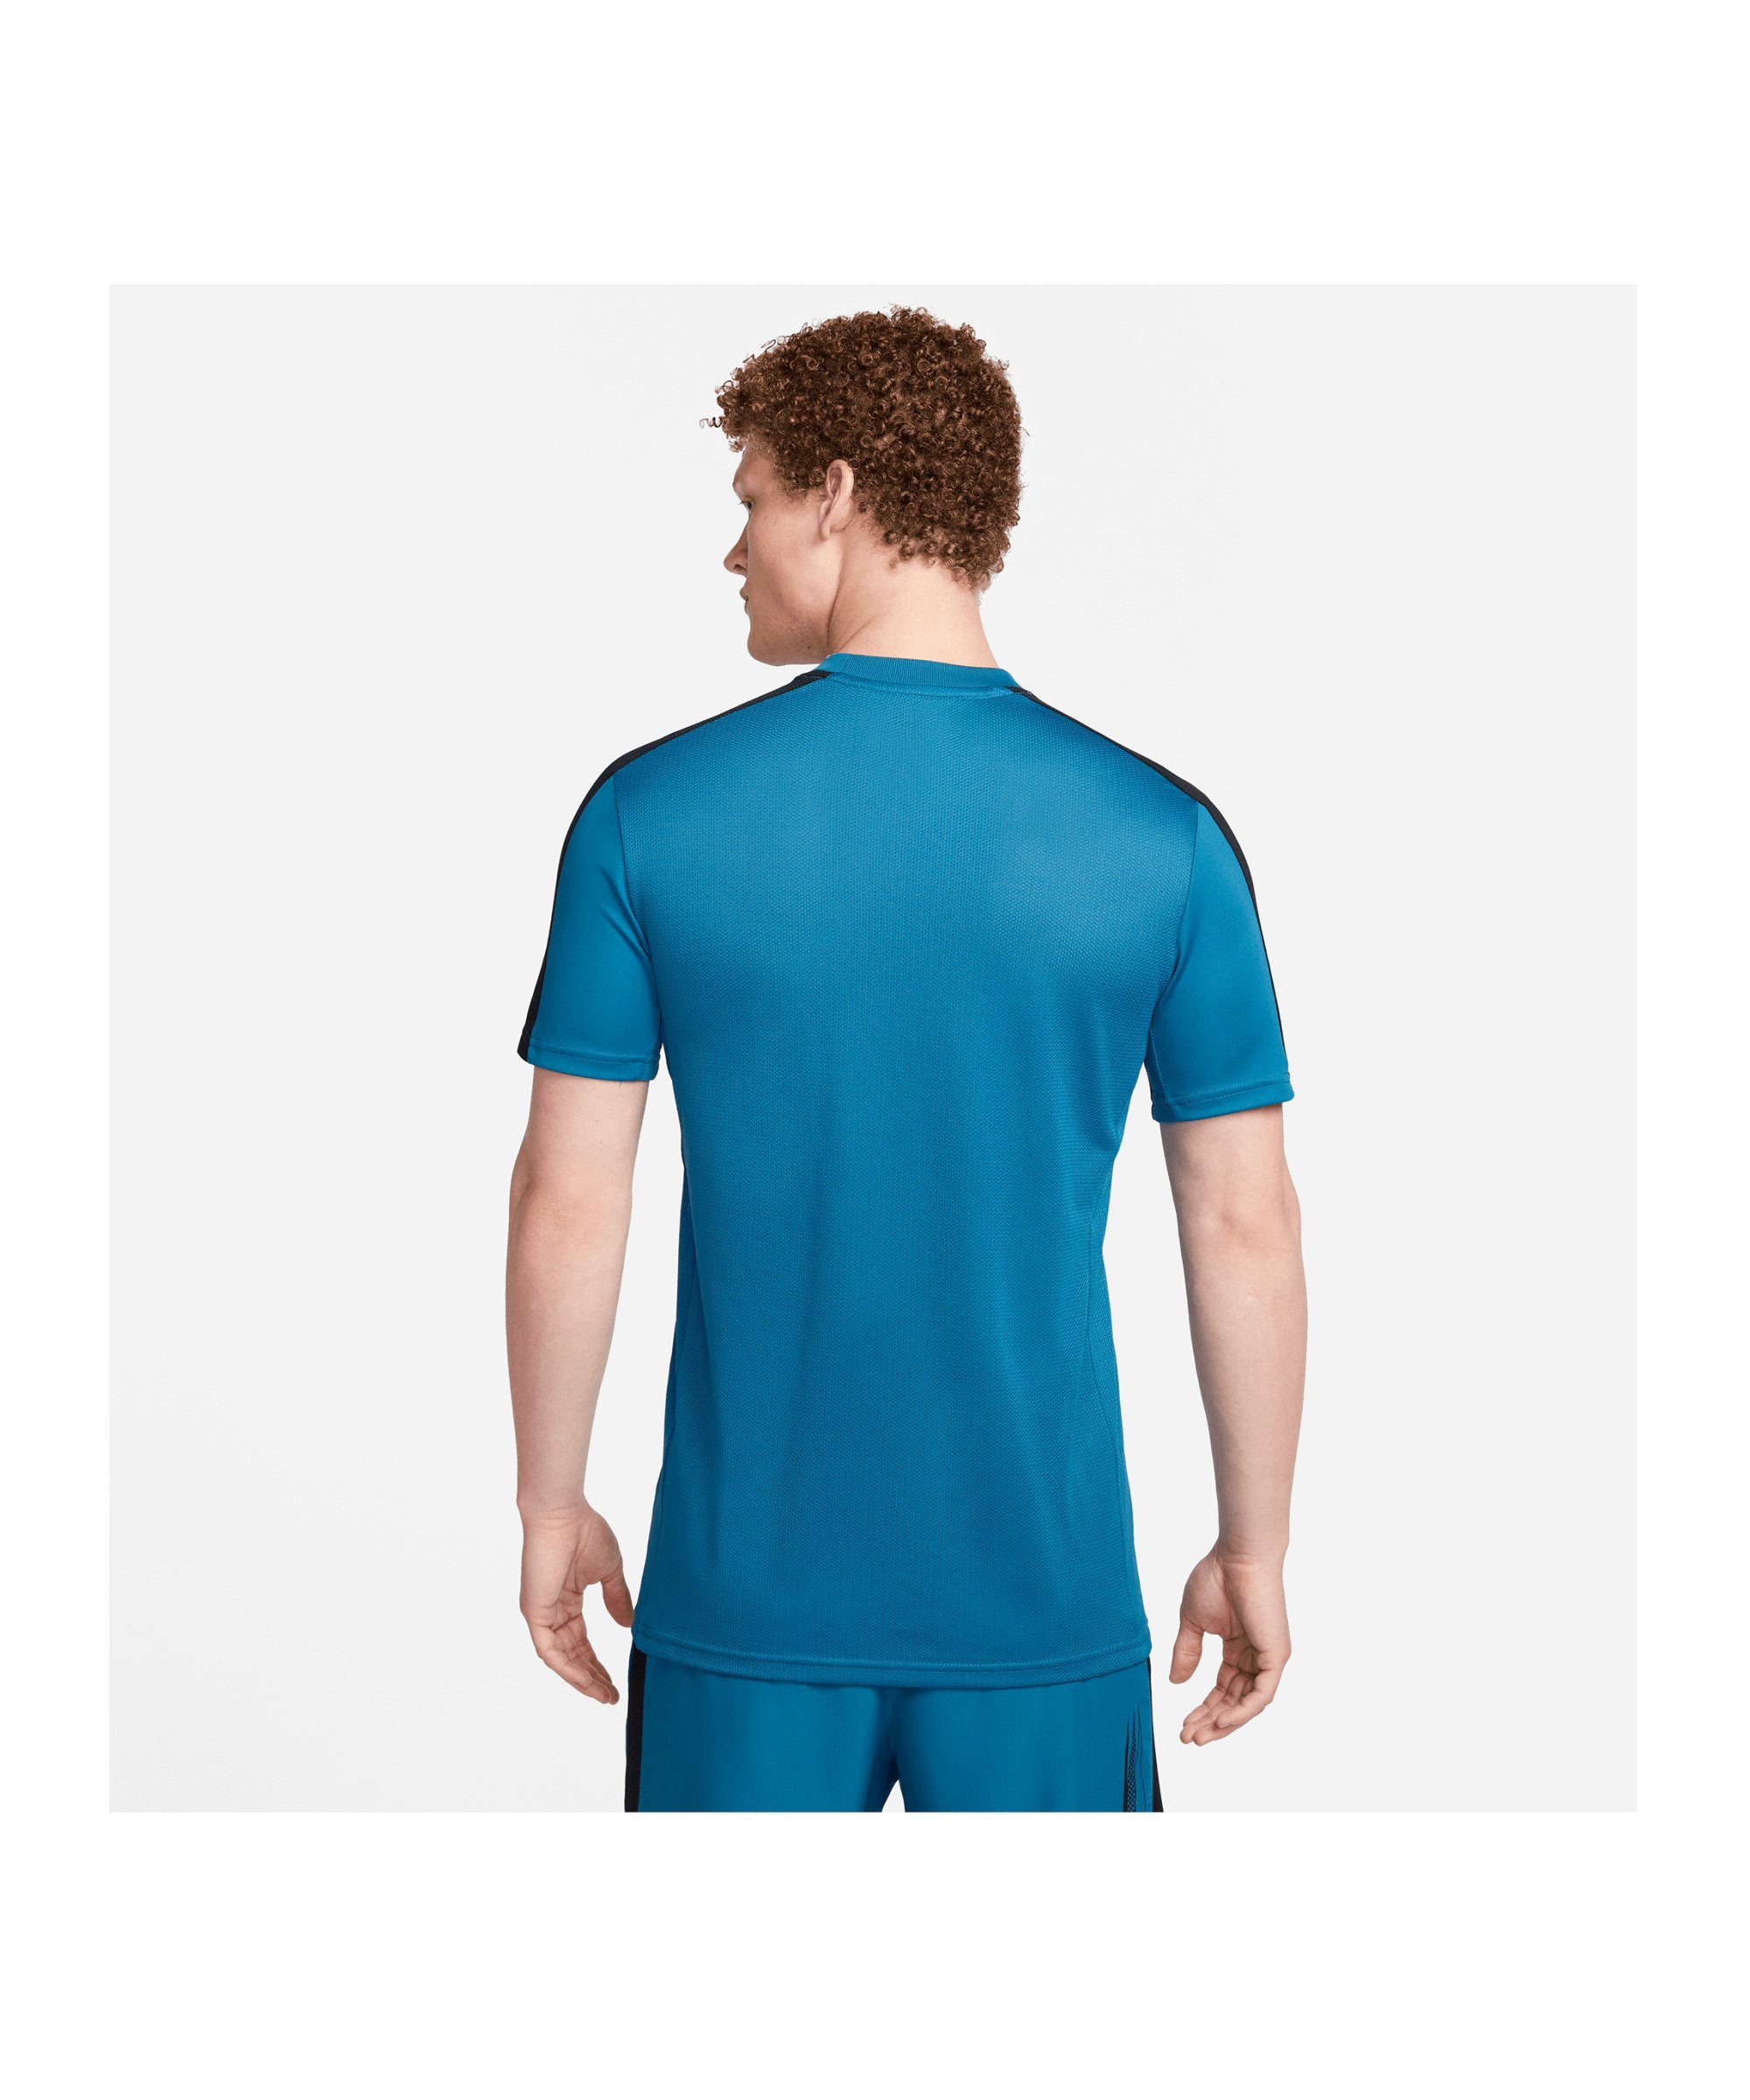 3D Logo T-Shirt Nike default T-Shirt blauschwarzschwarz Academy